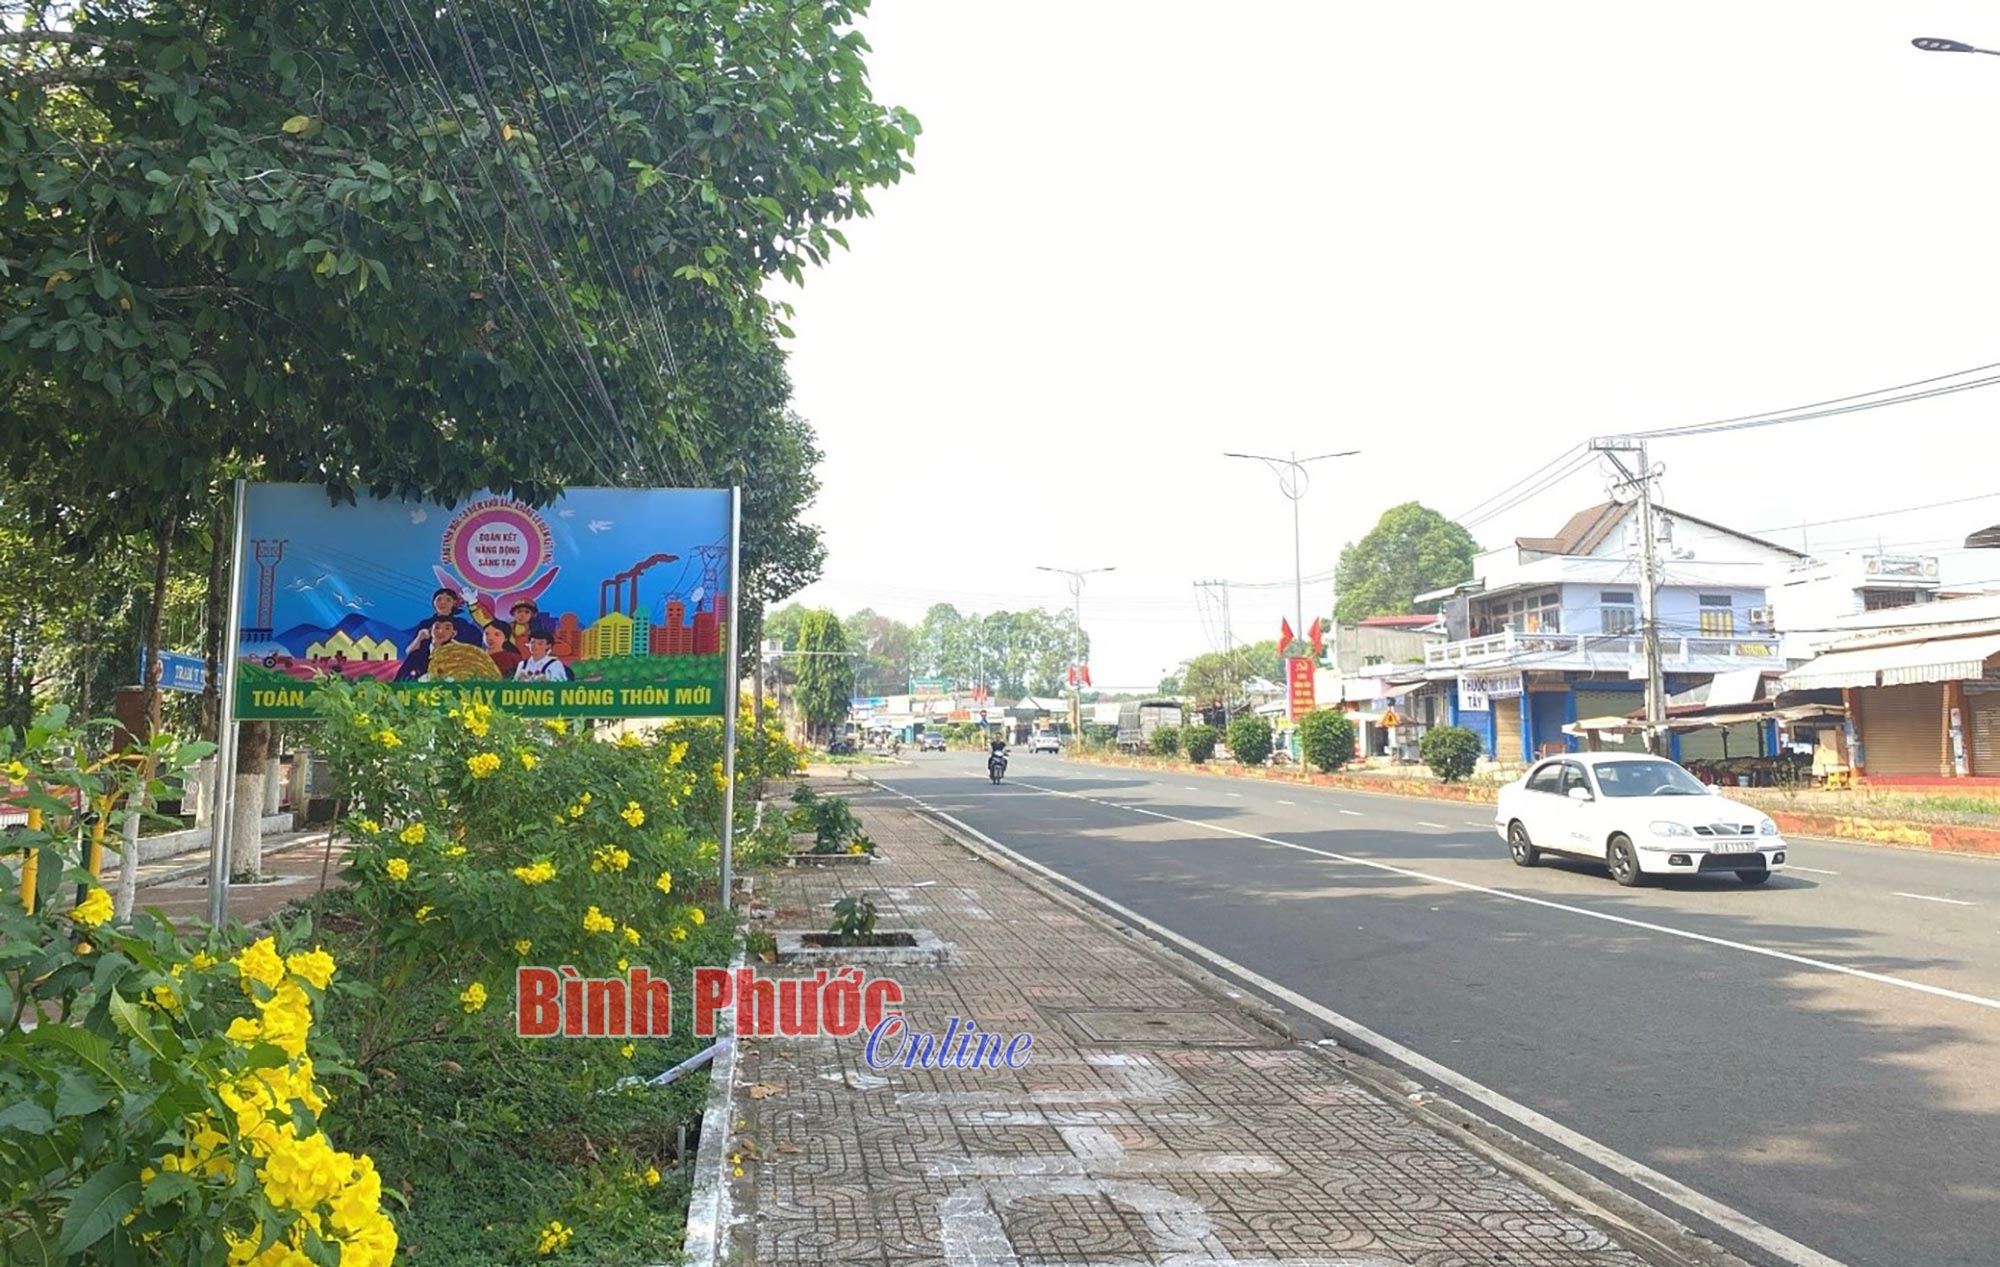 Một xã của tỉnh Bình Phước đang hóa phố trong làng, nhờ trồng cây điều mà dân giàu lên trông thấy- Ảnh 2.